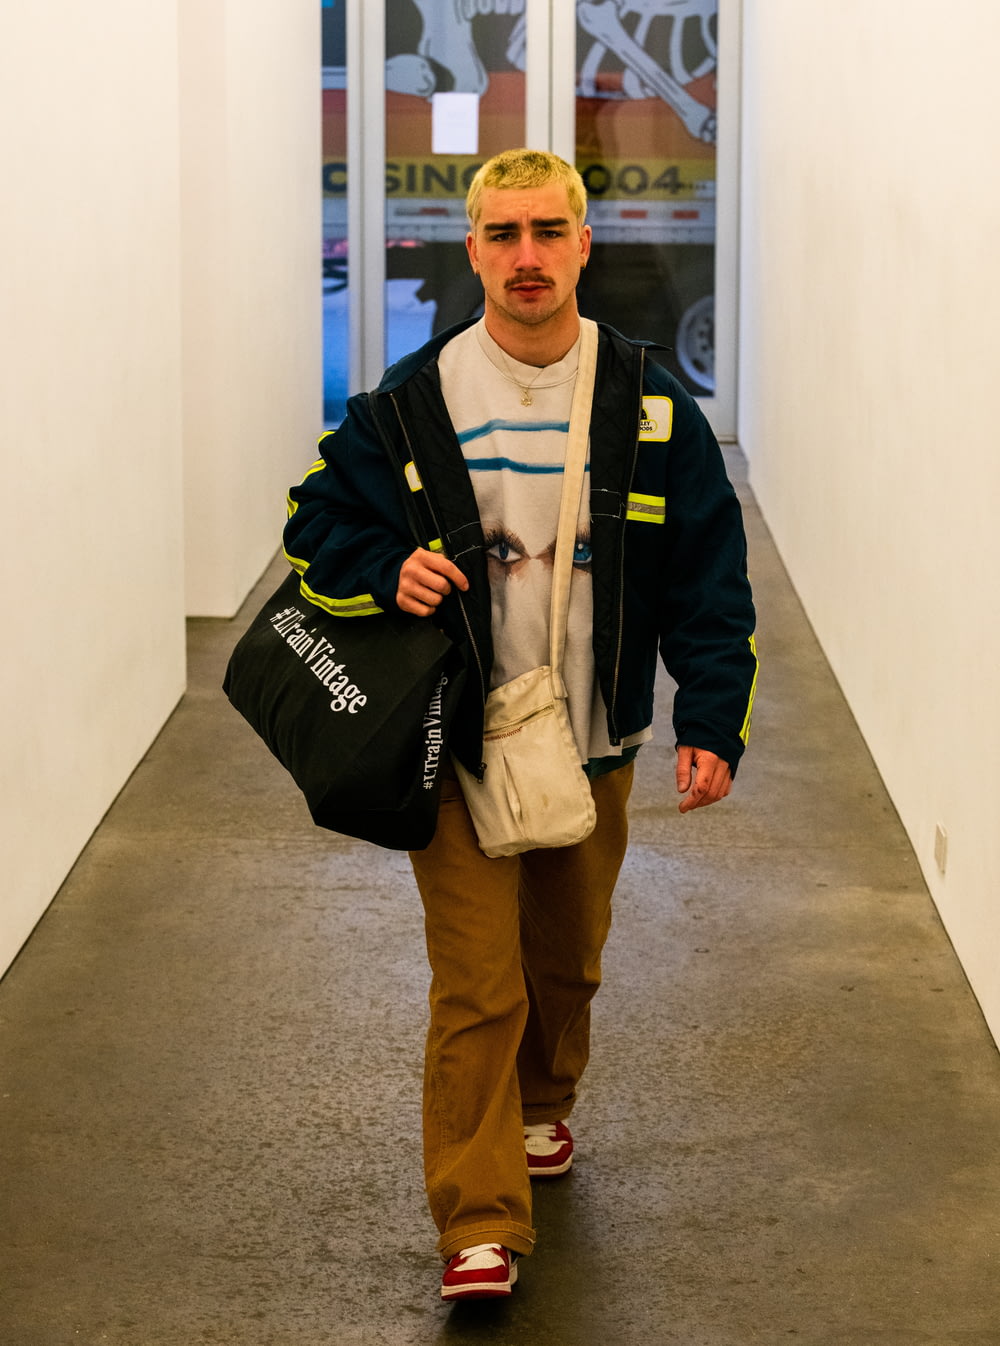 Un uomo che cammina lungo un corridoio portando una borsa